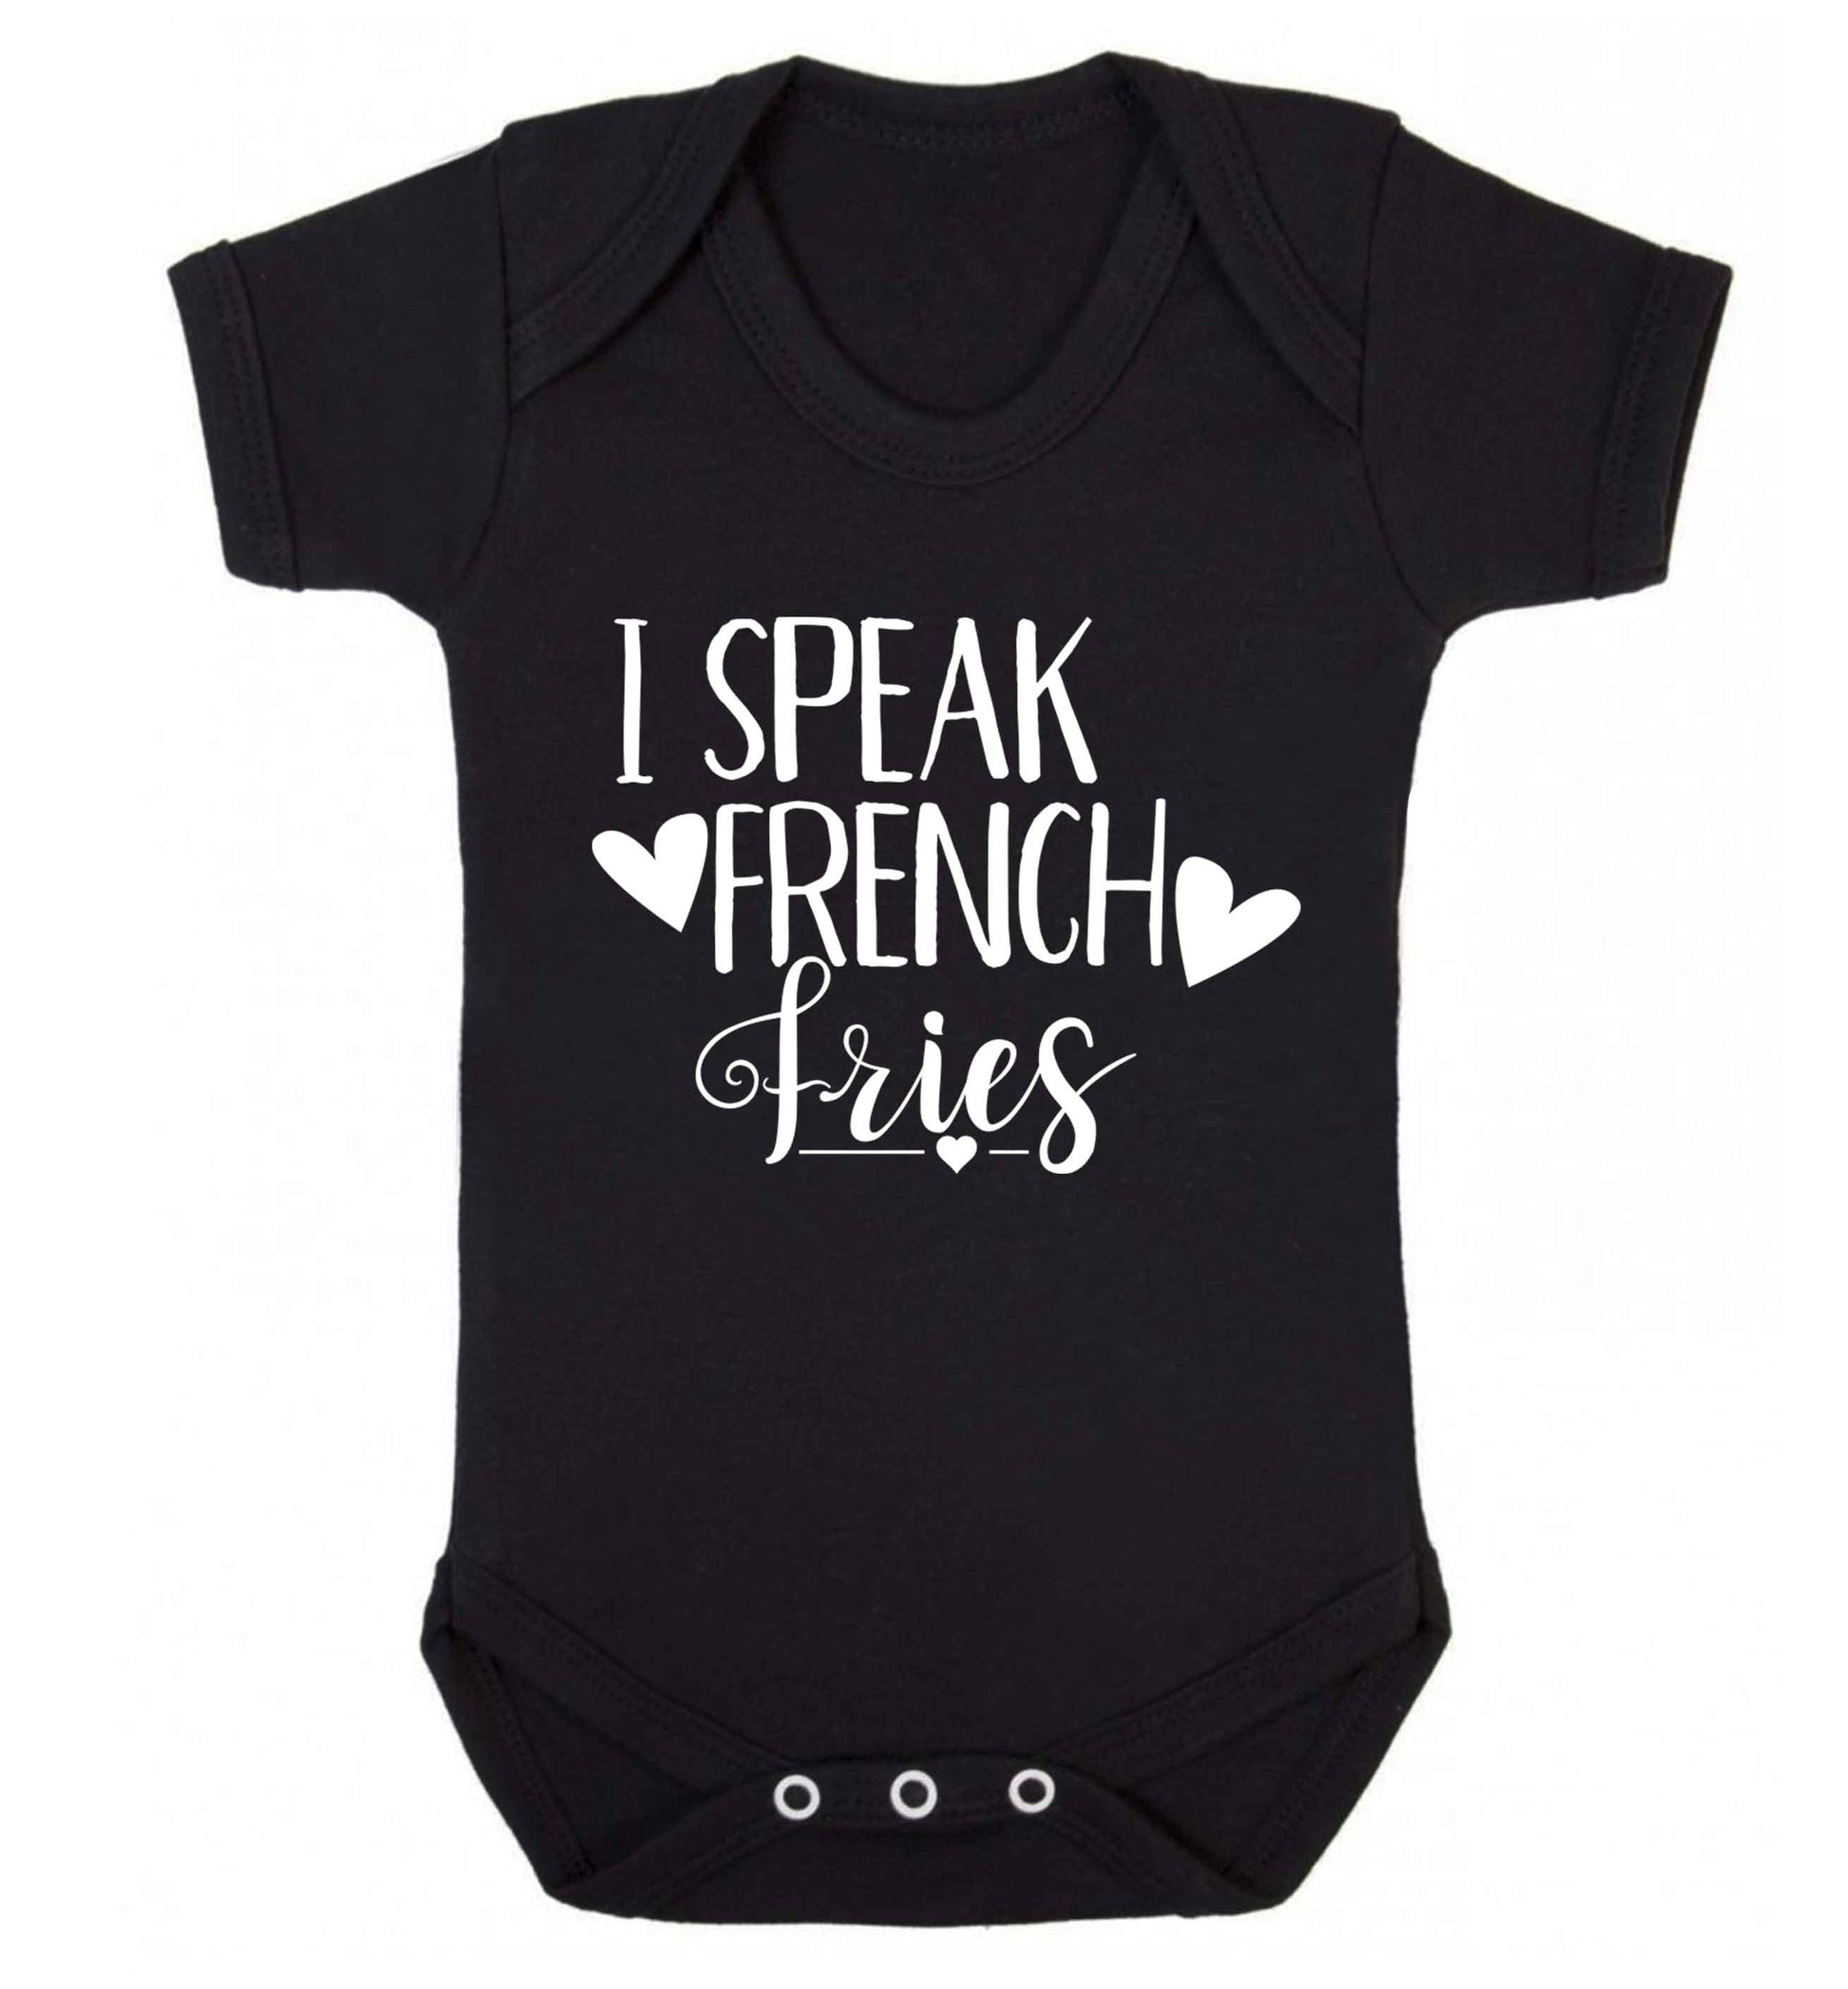 I speak French fries Baby Vest black 18-24 months